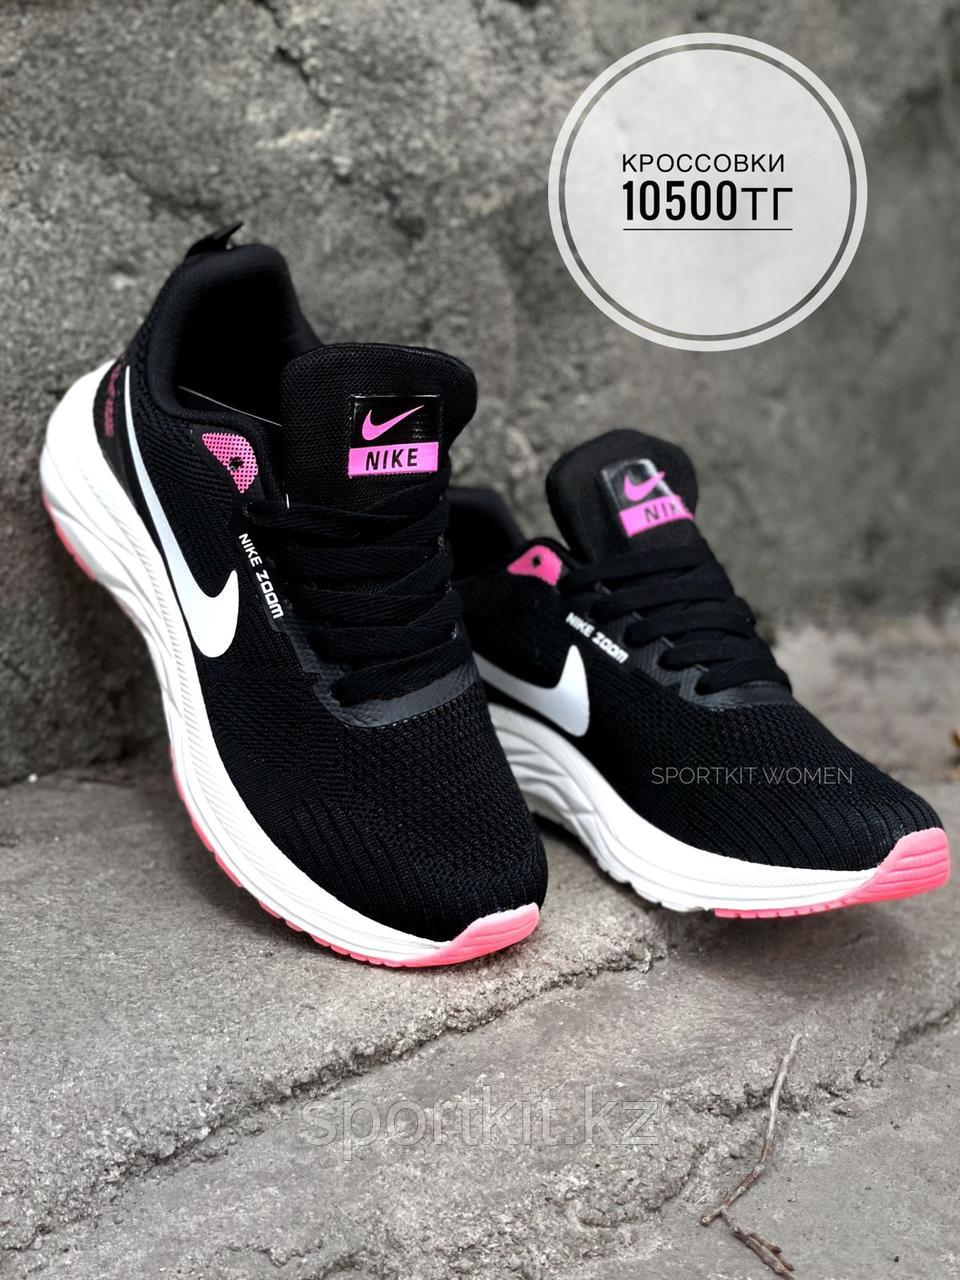 Крос Nike Air Zoom чвбн роз (жен) 2089-5